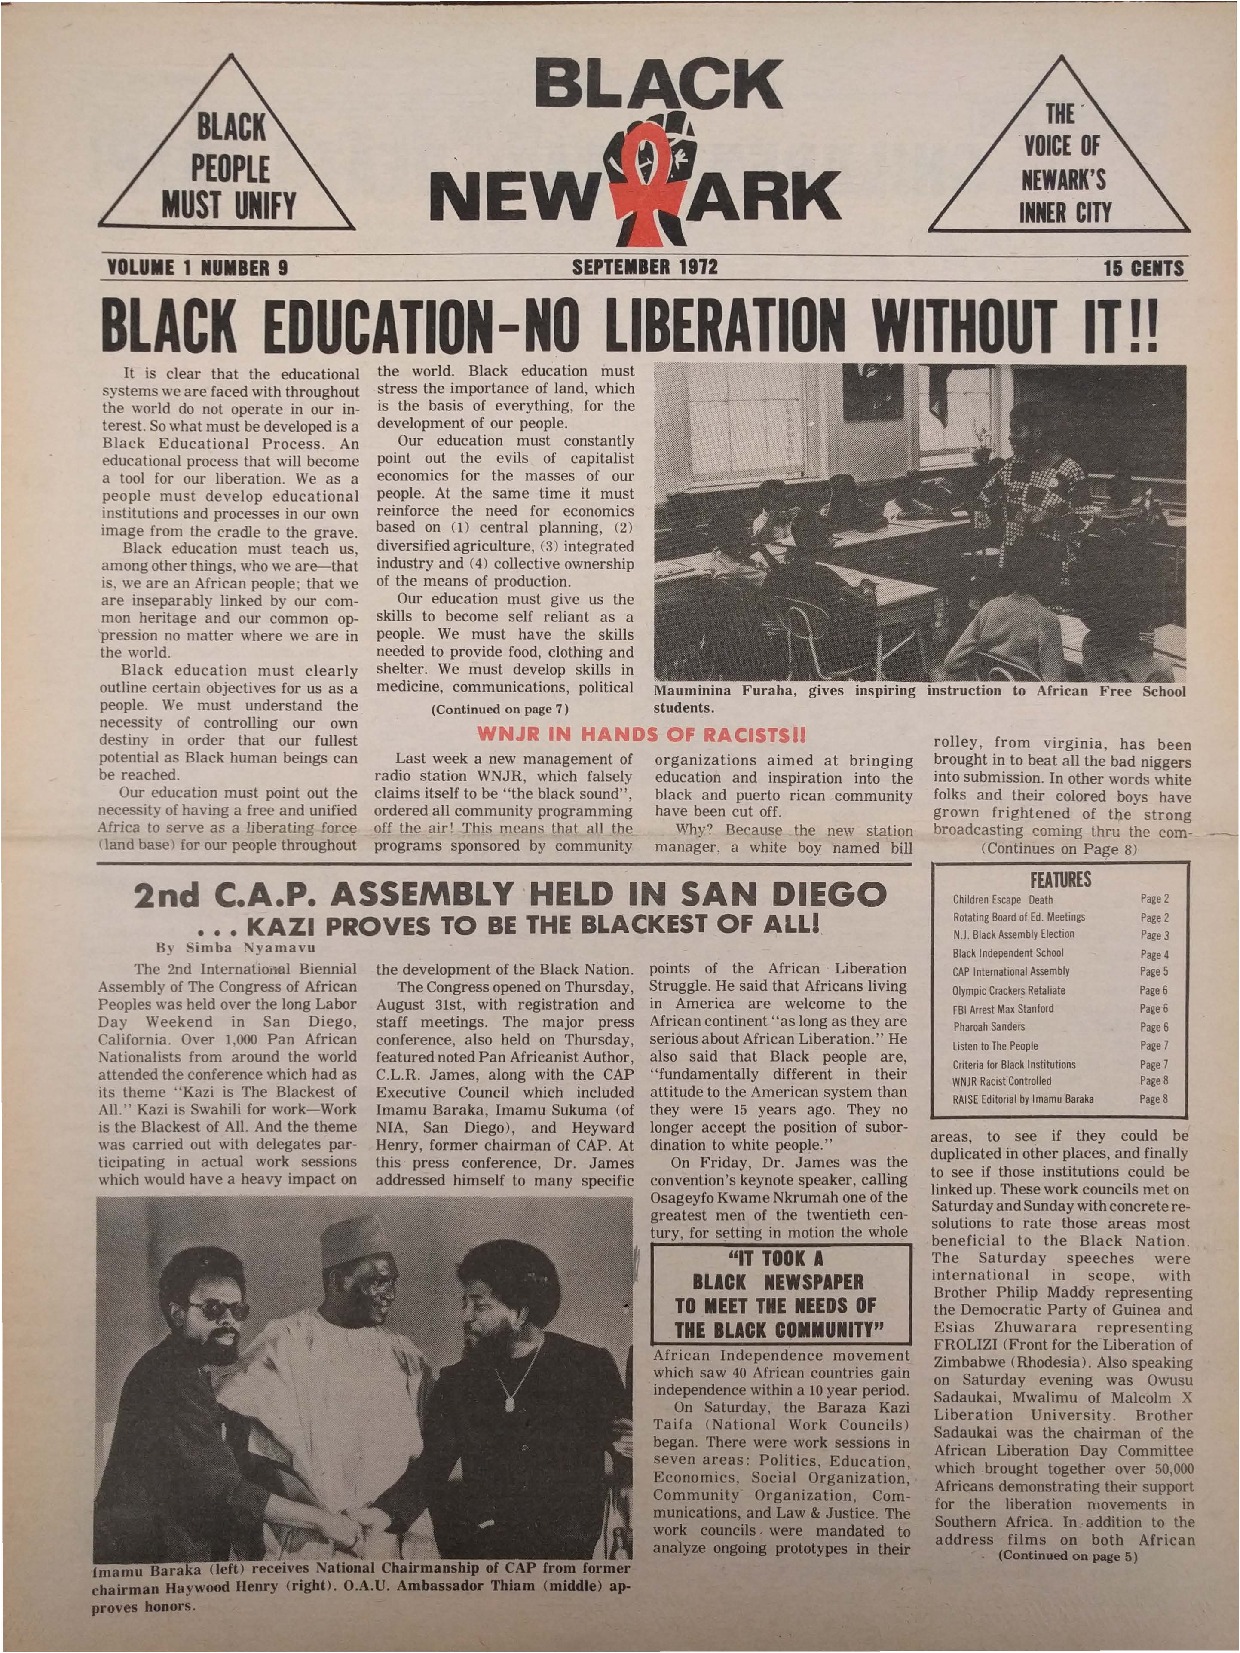 Black NewArk (Sept. 1972)